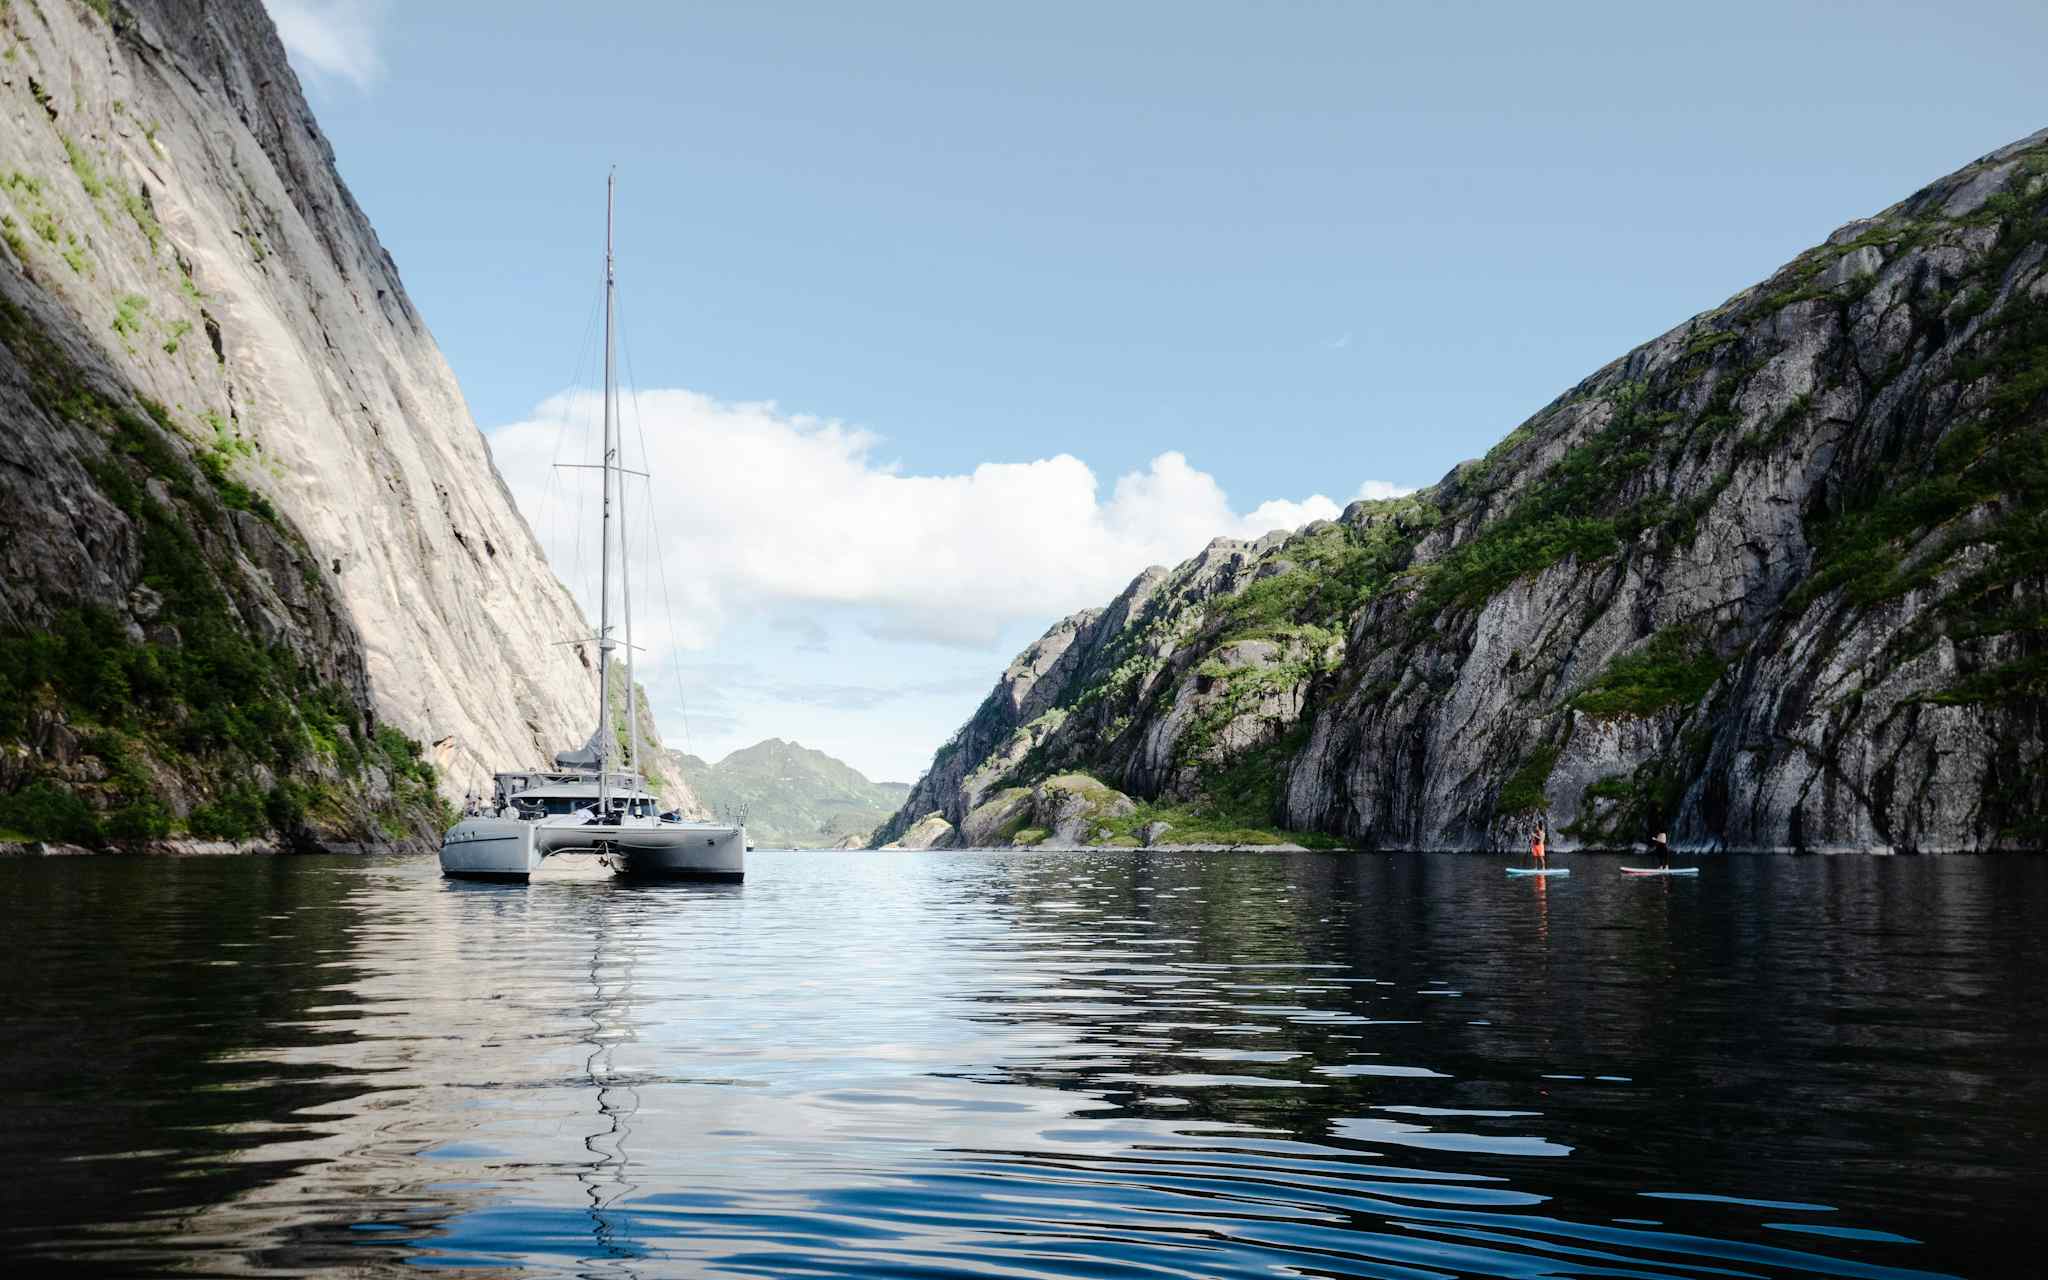 Lofoten sailing Trollfjord, Norway
Host image: Pukka Travels